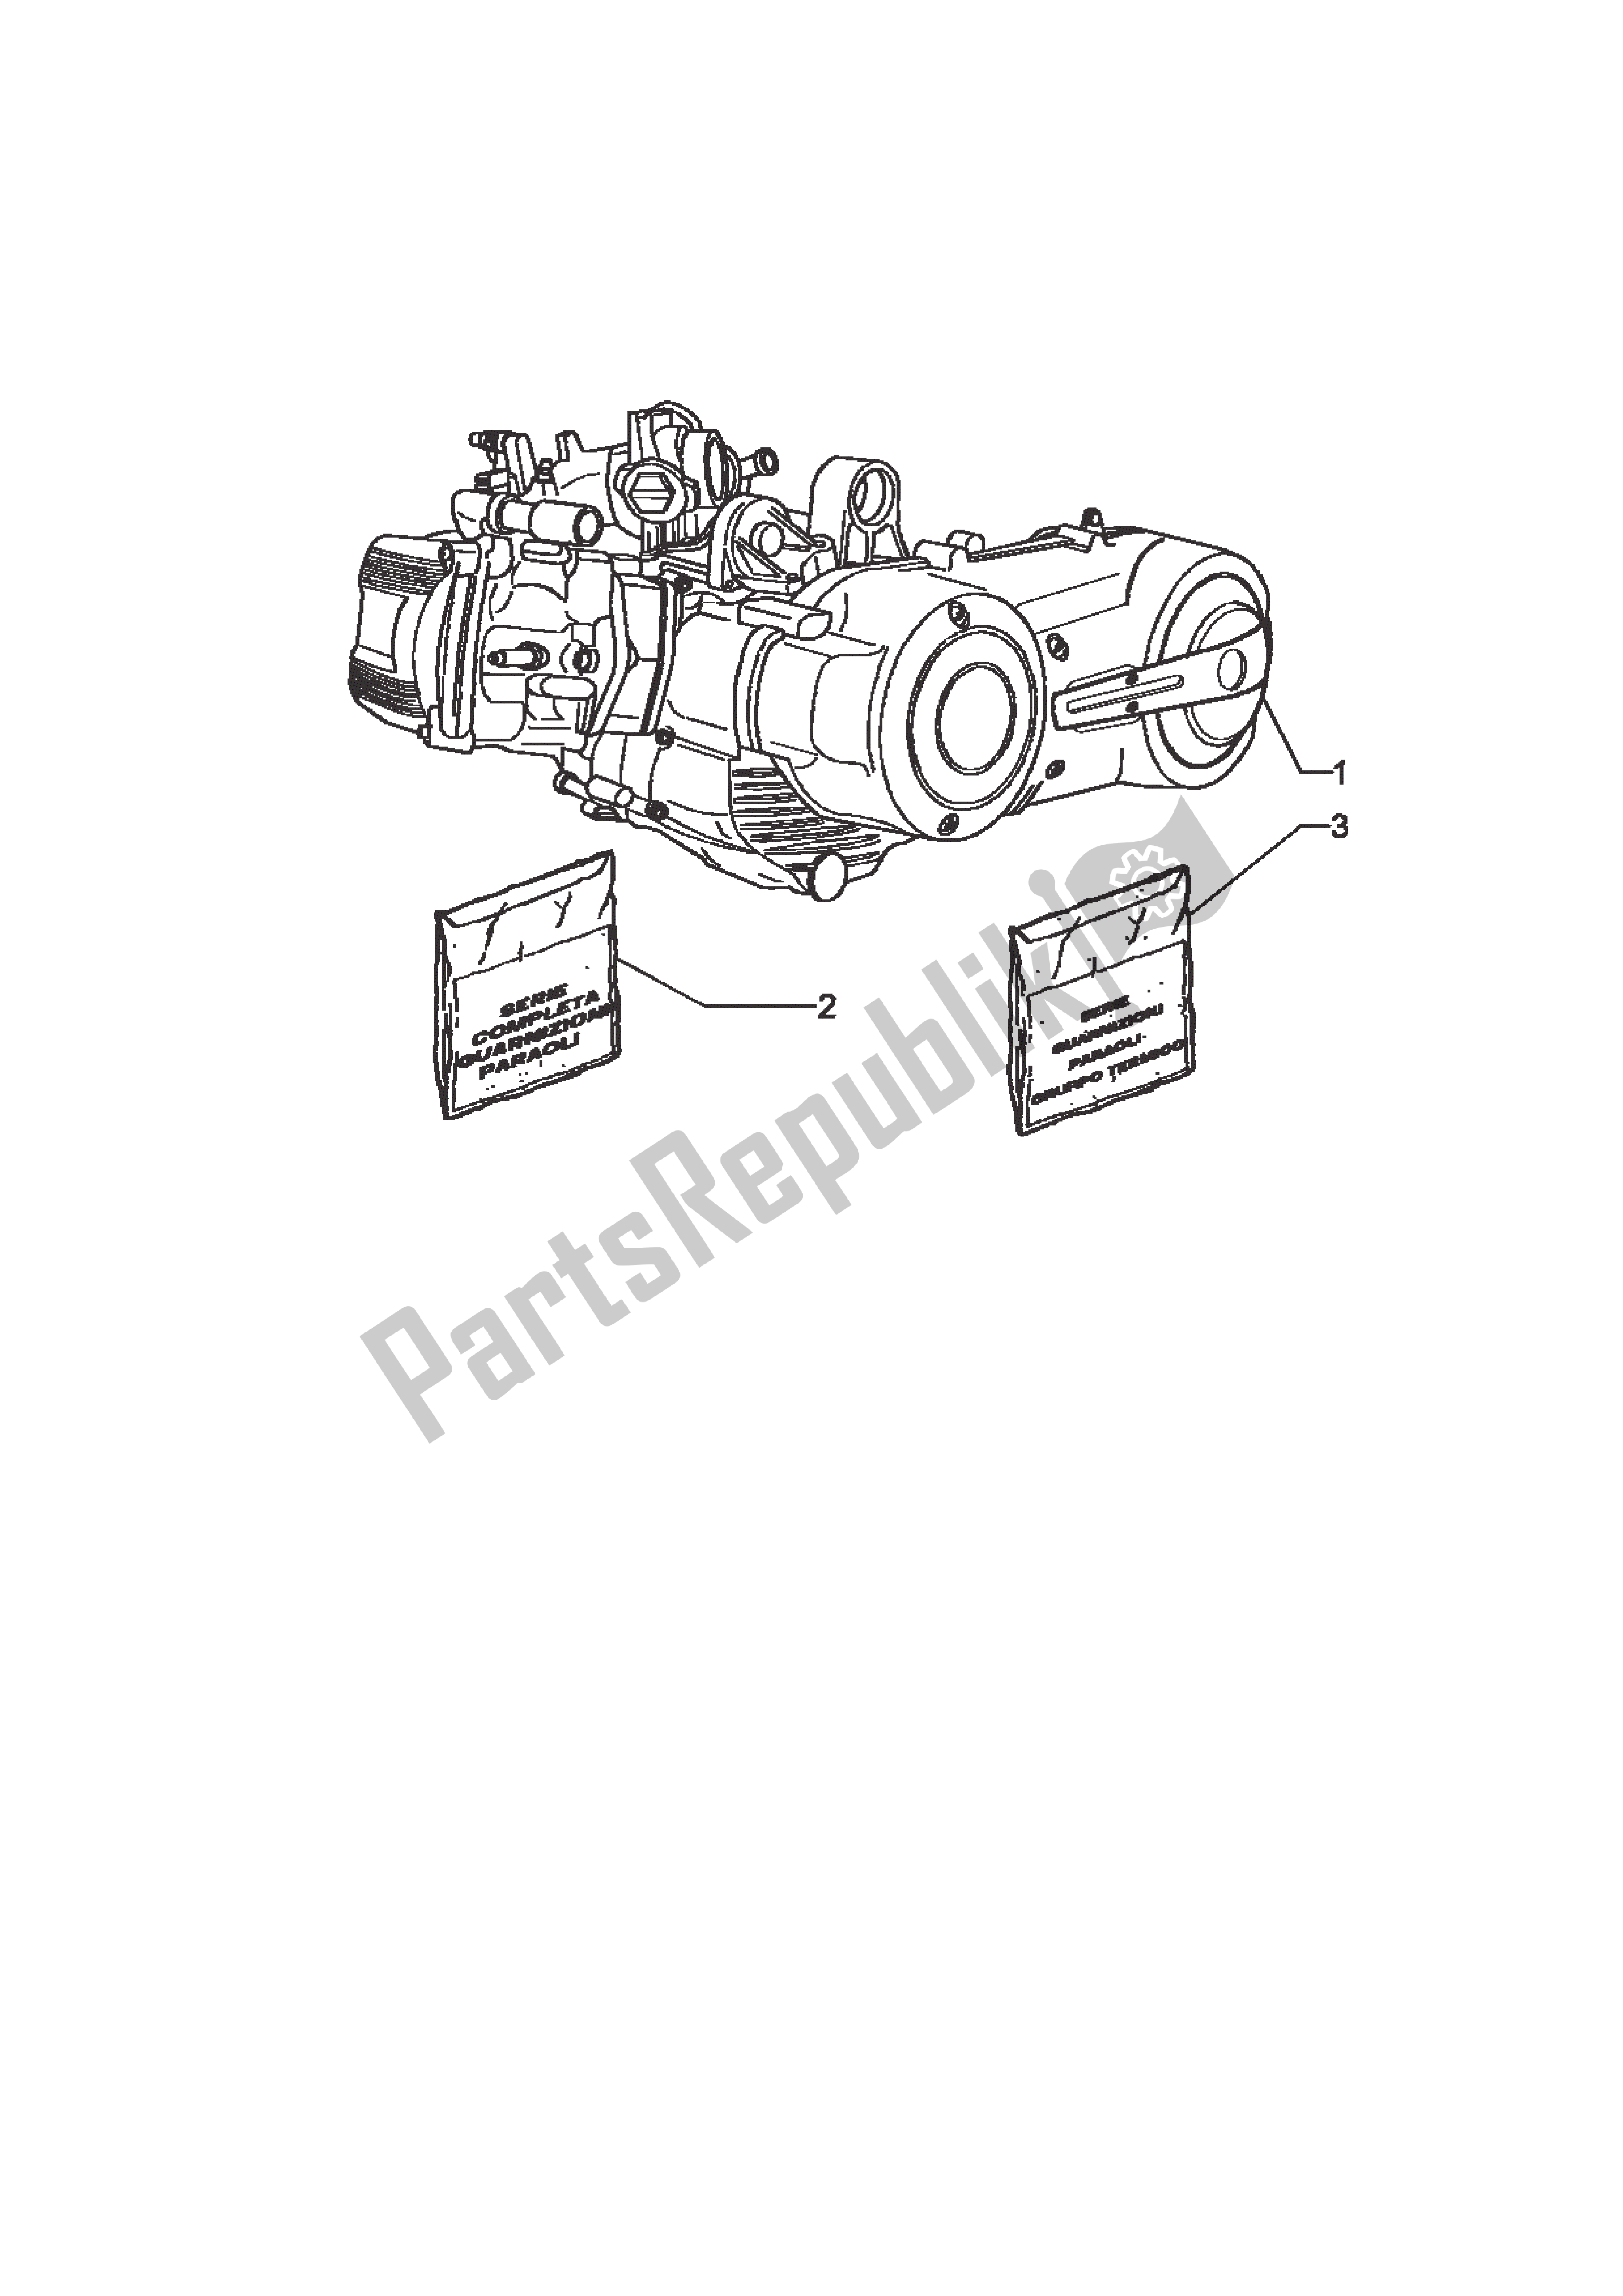 Todas las partes para Motor de Piaggio X9 500 2003 - 2004